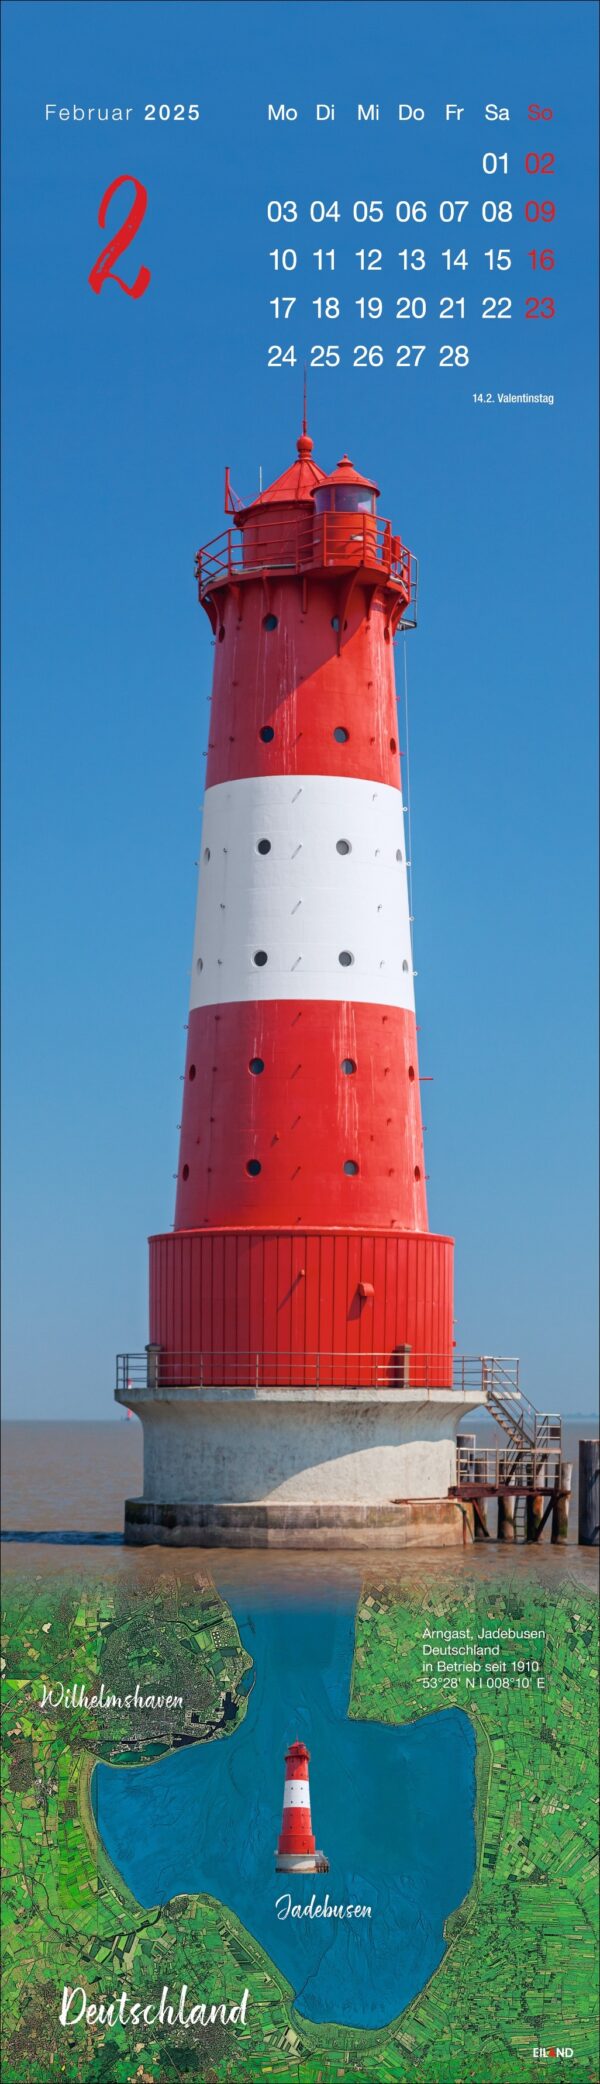 Ein LongEiland - Kalender 2025 für Februar mit einem Foto eines großen rot-weißen Leuchtturms an einem blauen Gewässer. Unten steht "Deutschland" mit einer kleinen Karte, die die